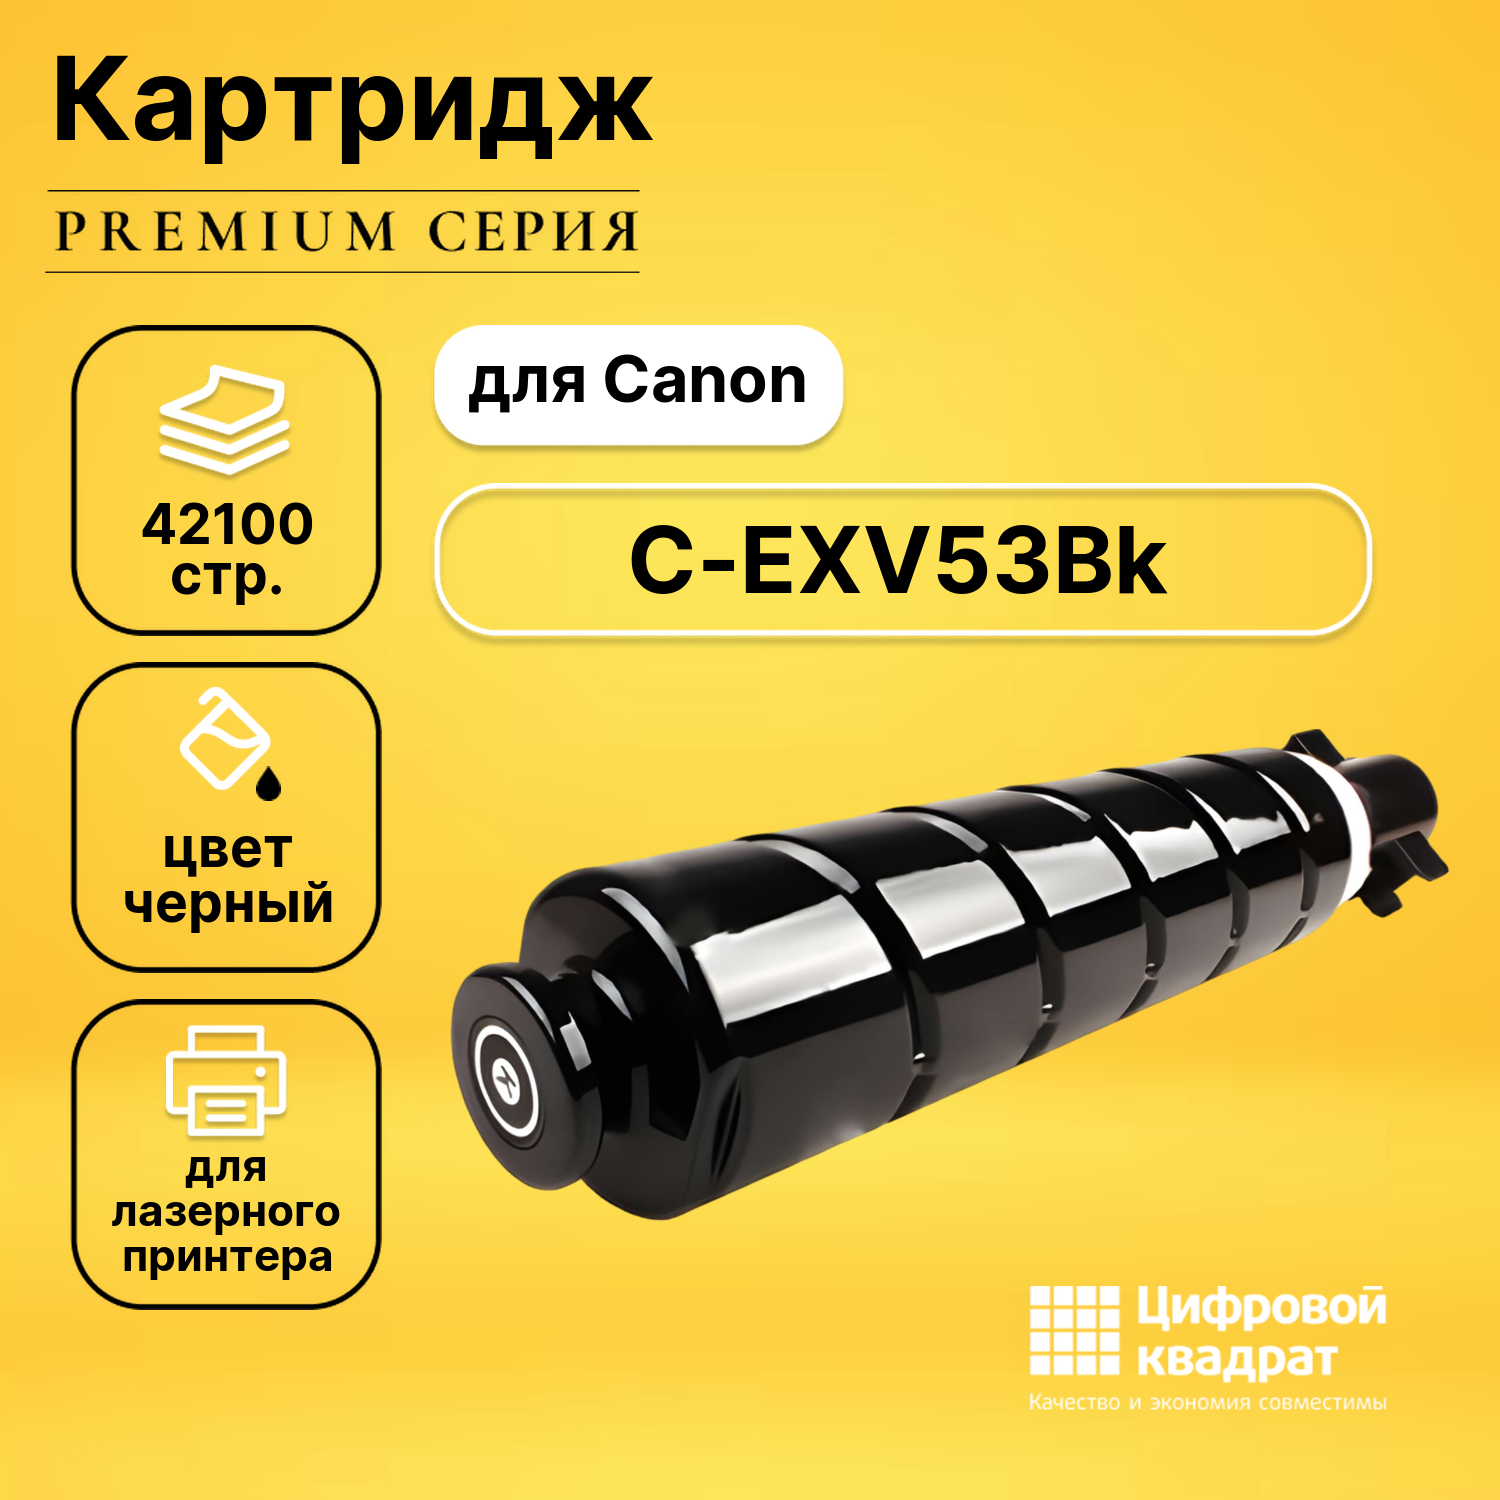 Картридж DS C-EXV53Bk Canon черный совместимый